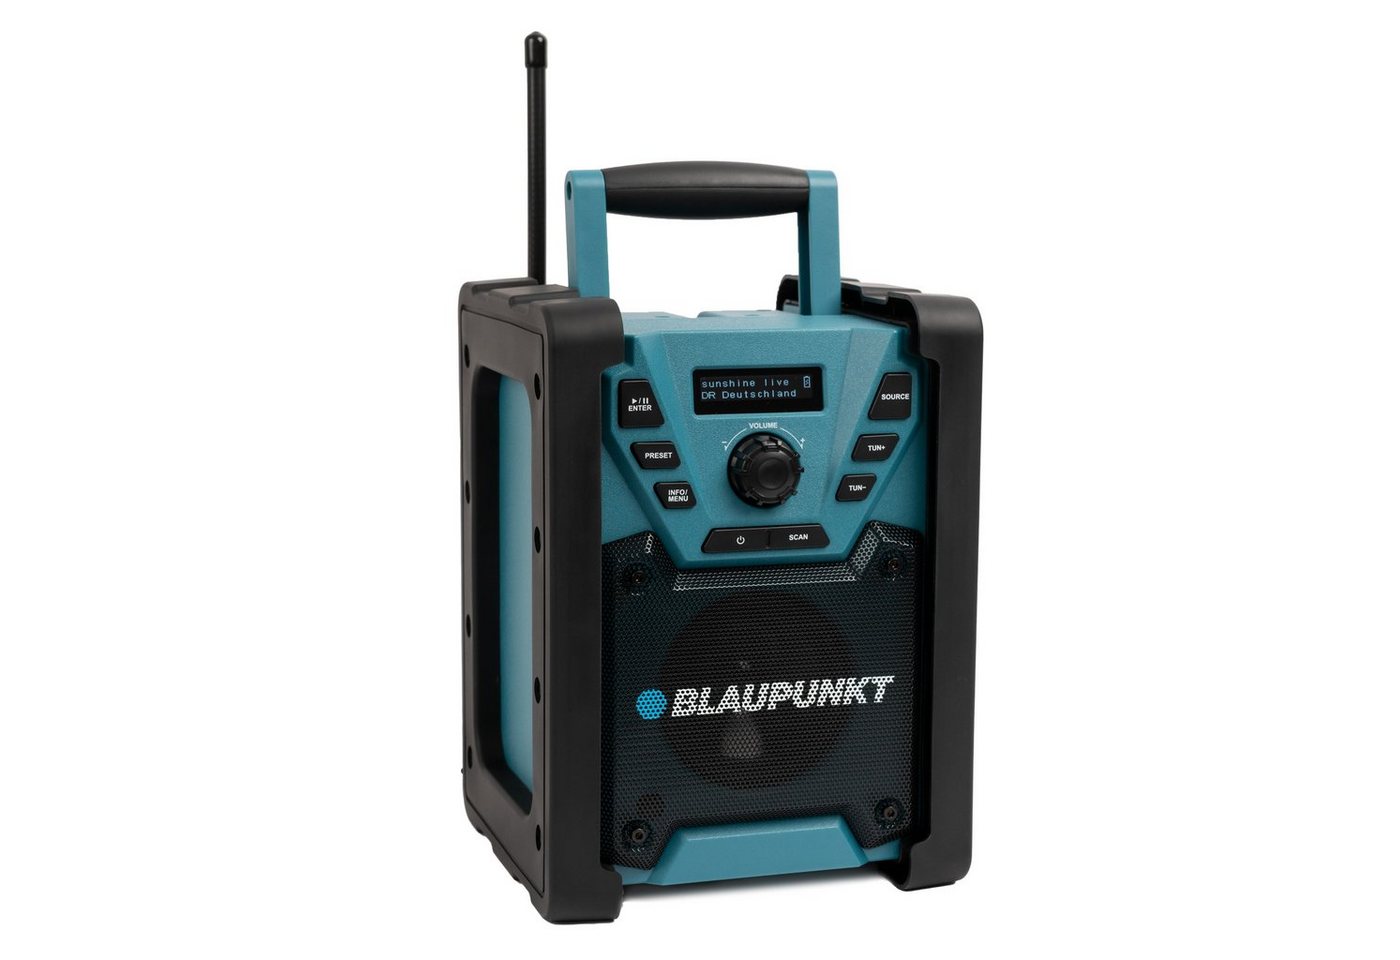 Blaupunkt BSR 200 Baustellenradio (Digitalradio (DAB), UKW, 5,00 W, Bluetooth, 40 Senderspeicher DAB+ / 20 Senderspeicher UKW, AUX-IN) von Blaupunkt